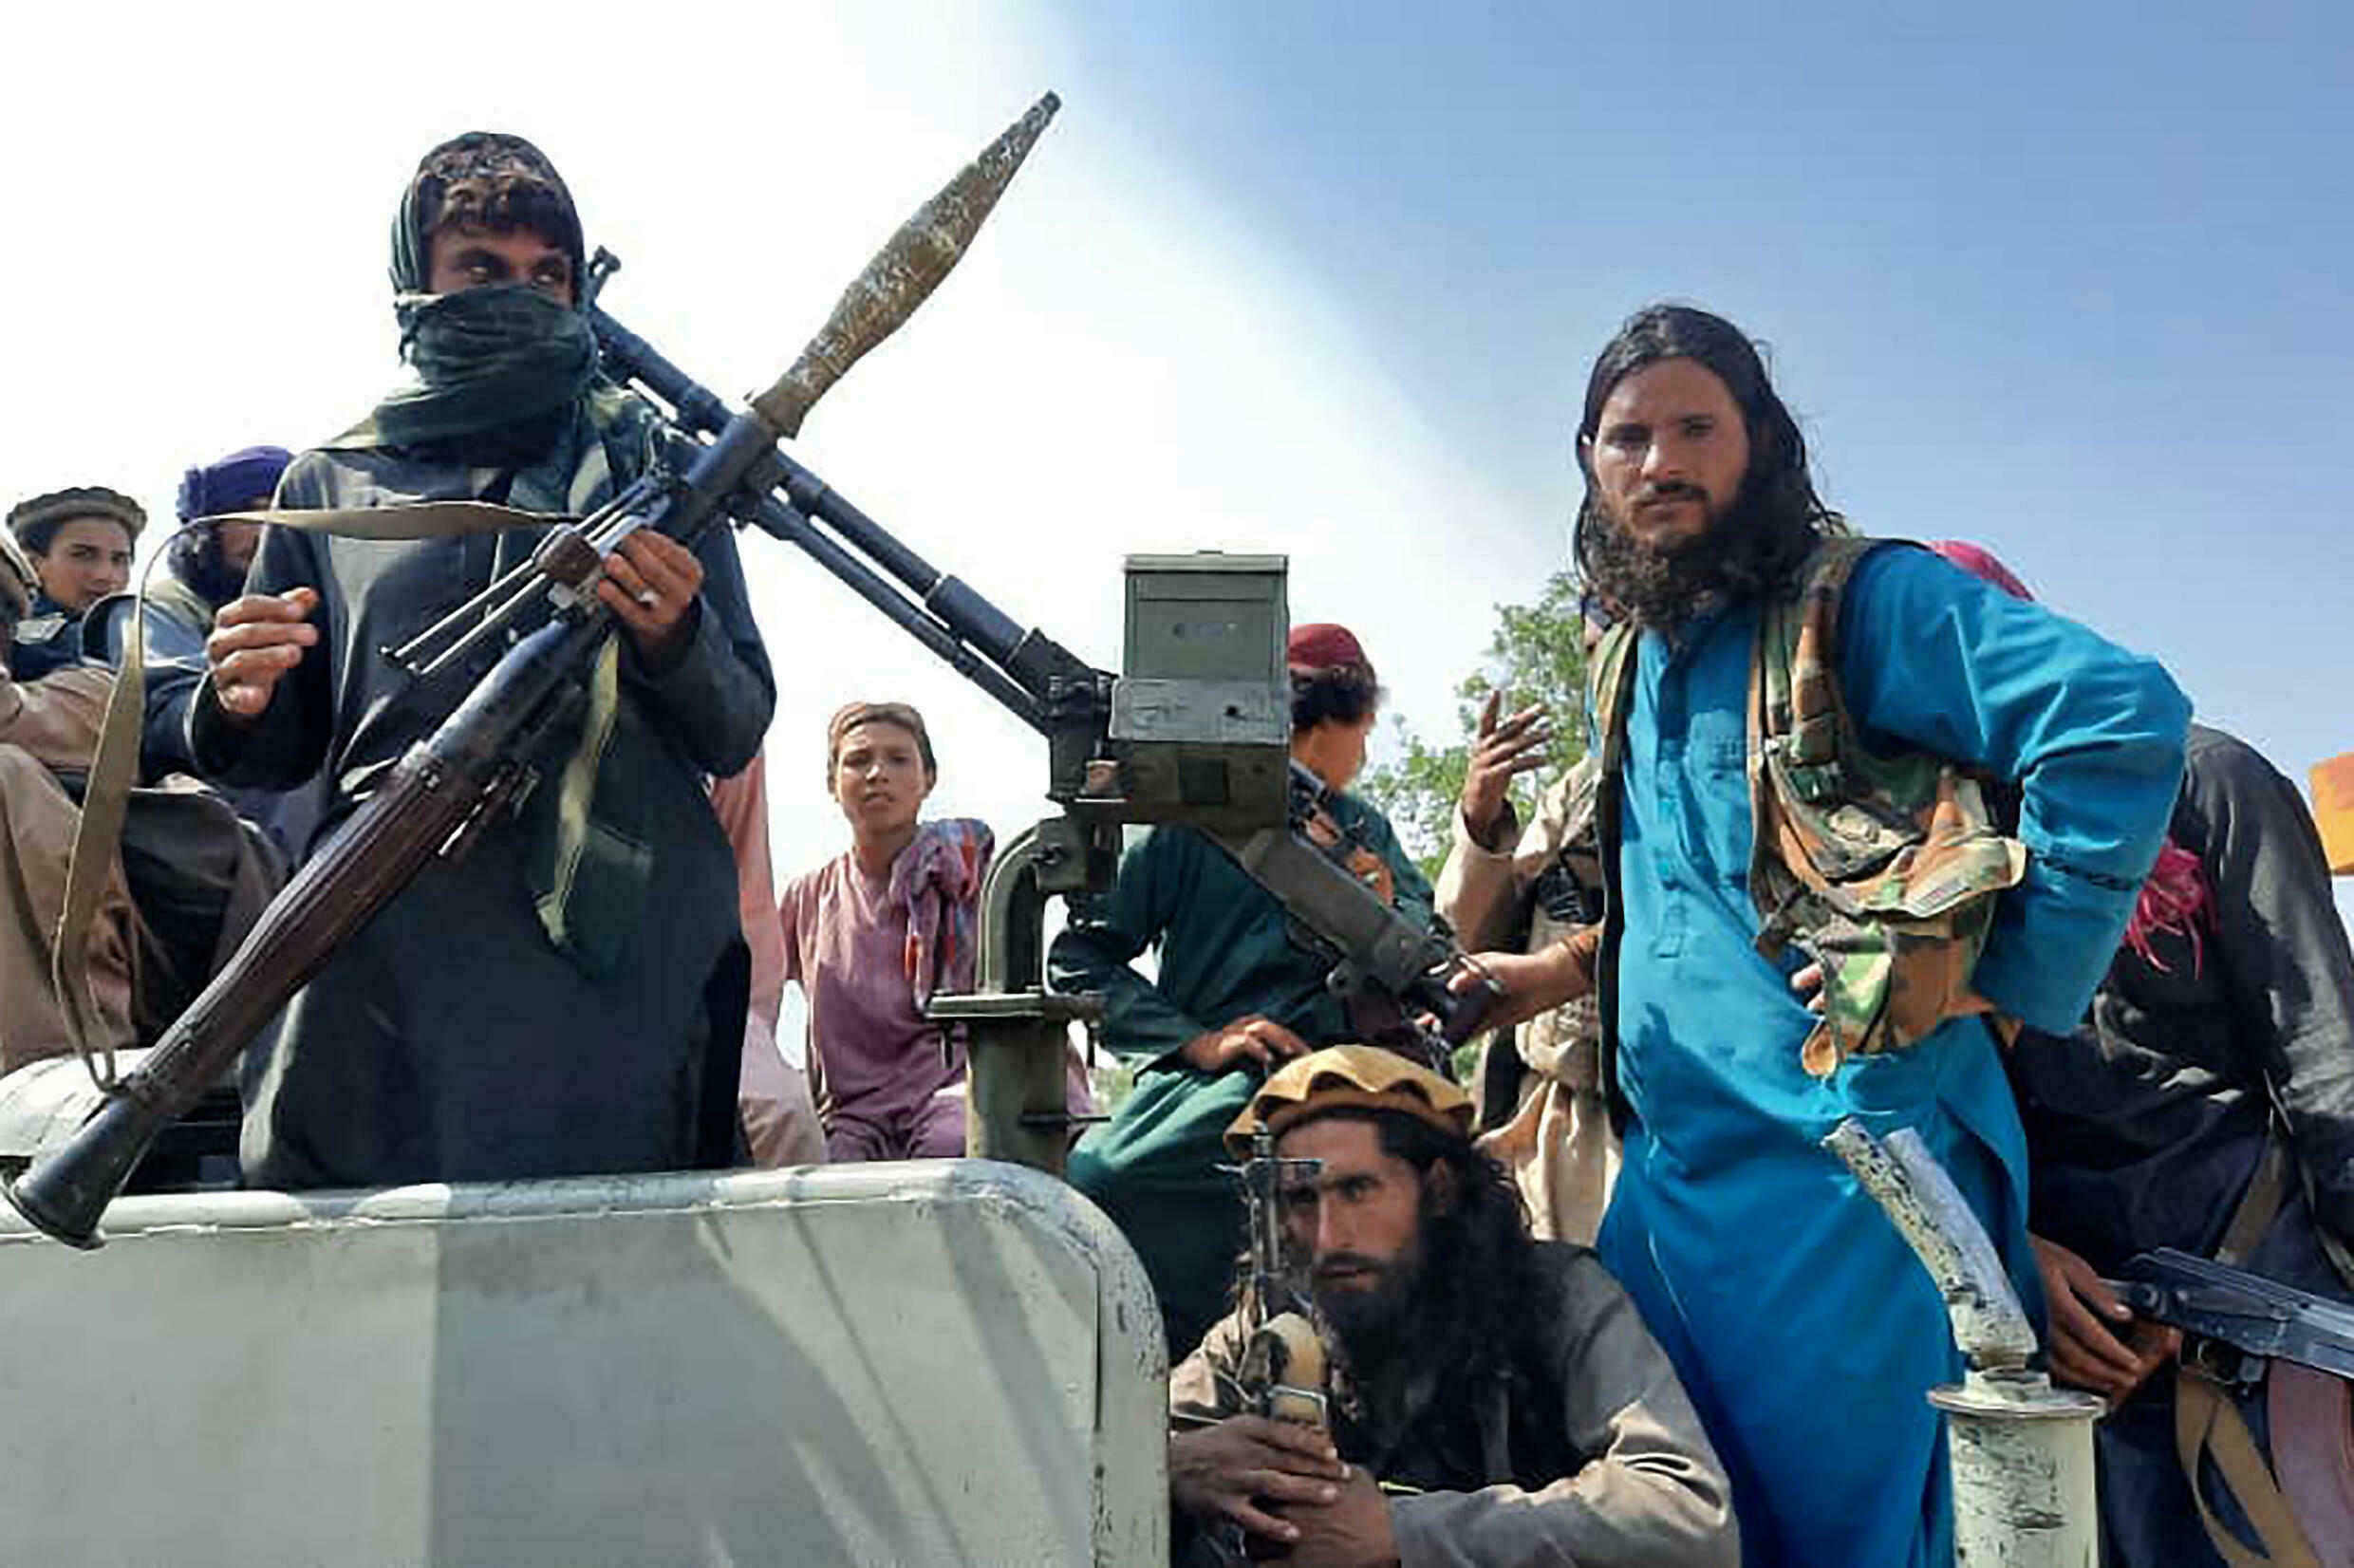 Δυσφορία Ταλιμπάν για την αμερικανική επίθεση κατά της ISIS: Θα έπρεπε να μας είχαν ενημερώσει πρώτα